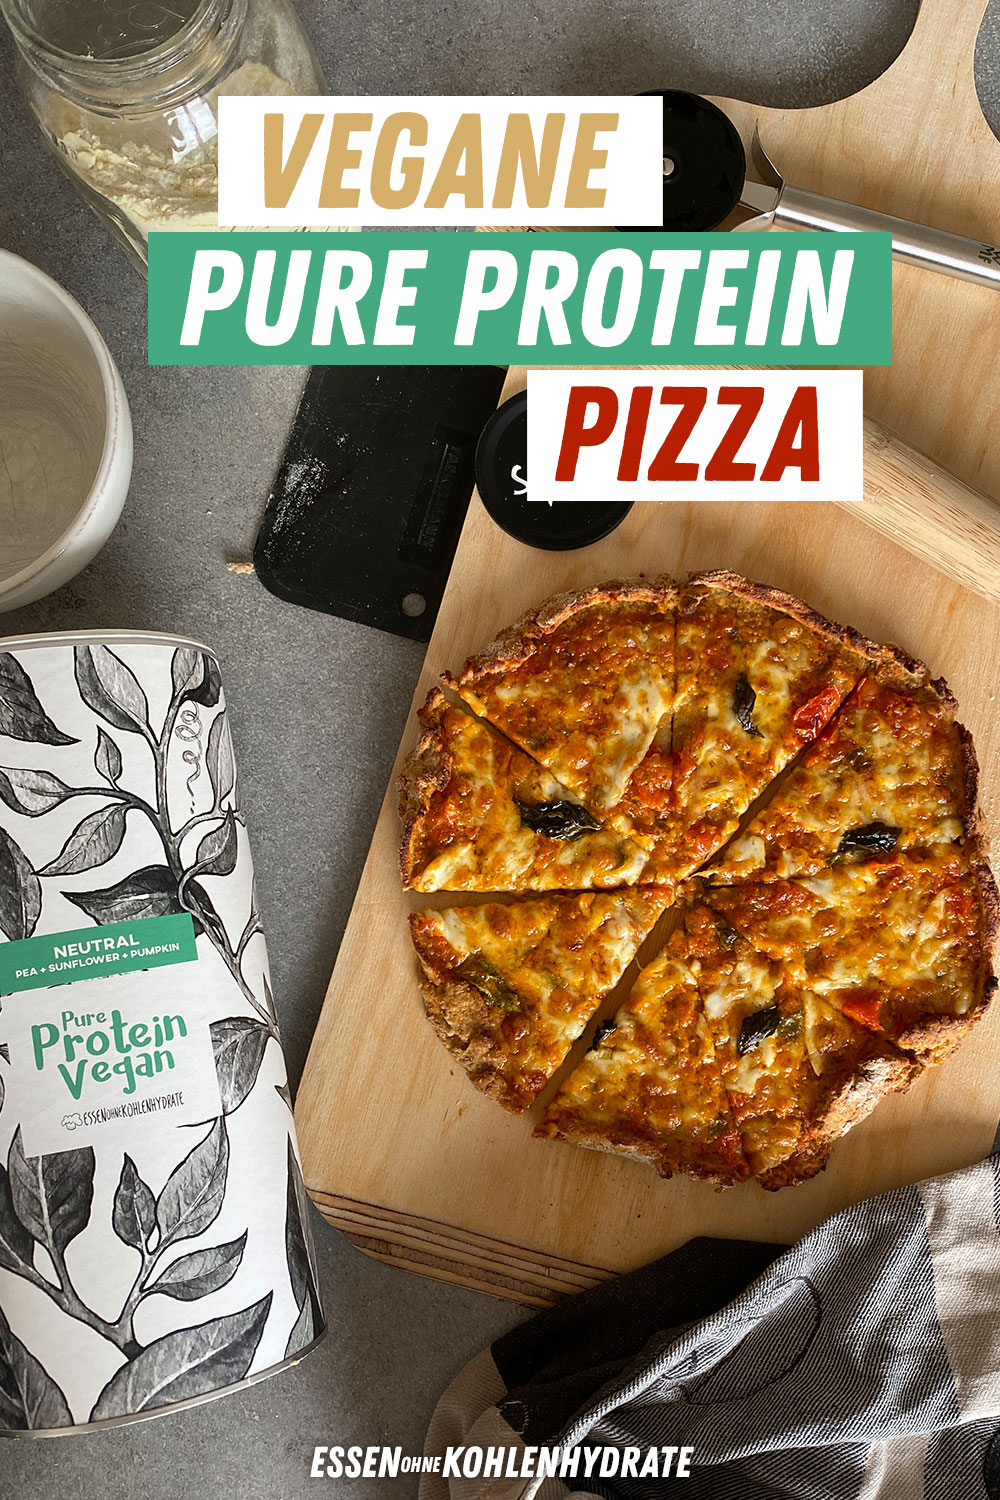 Vegane Pure Protein Pizza - Mehr Eiweiß als Kohlenhydrate